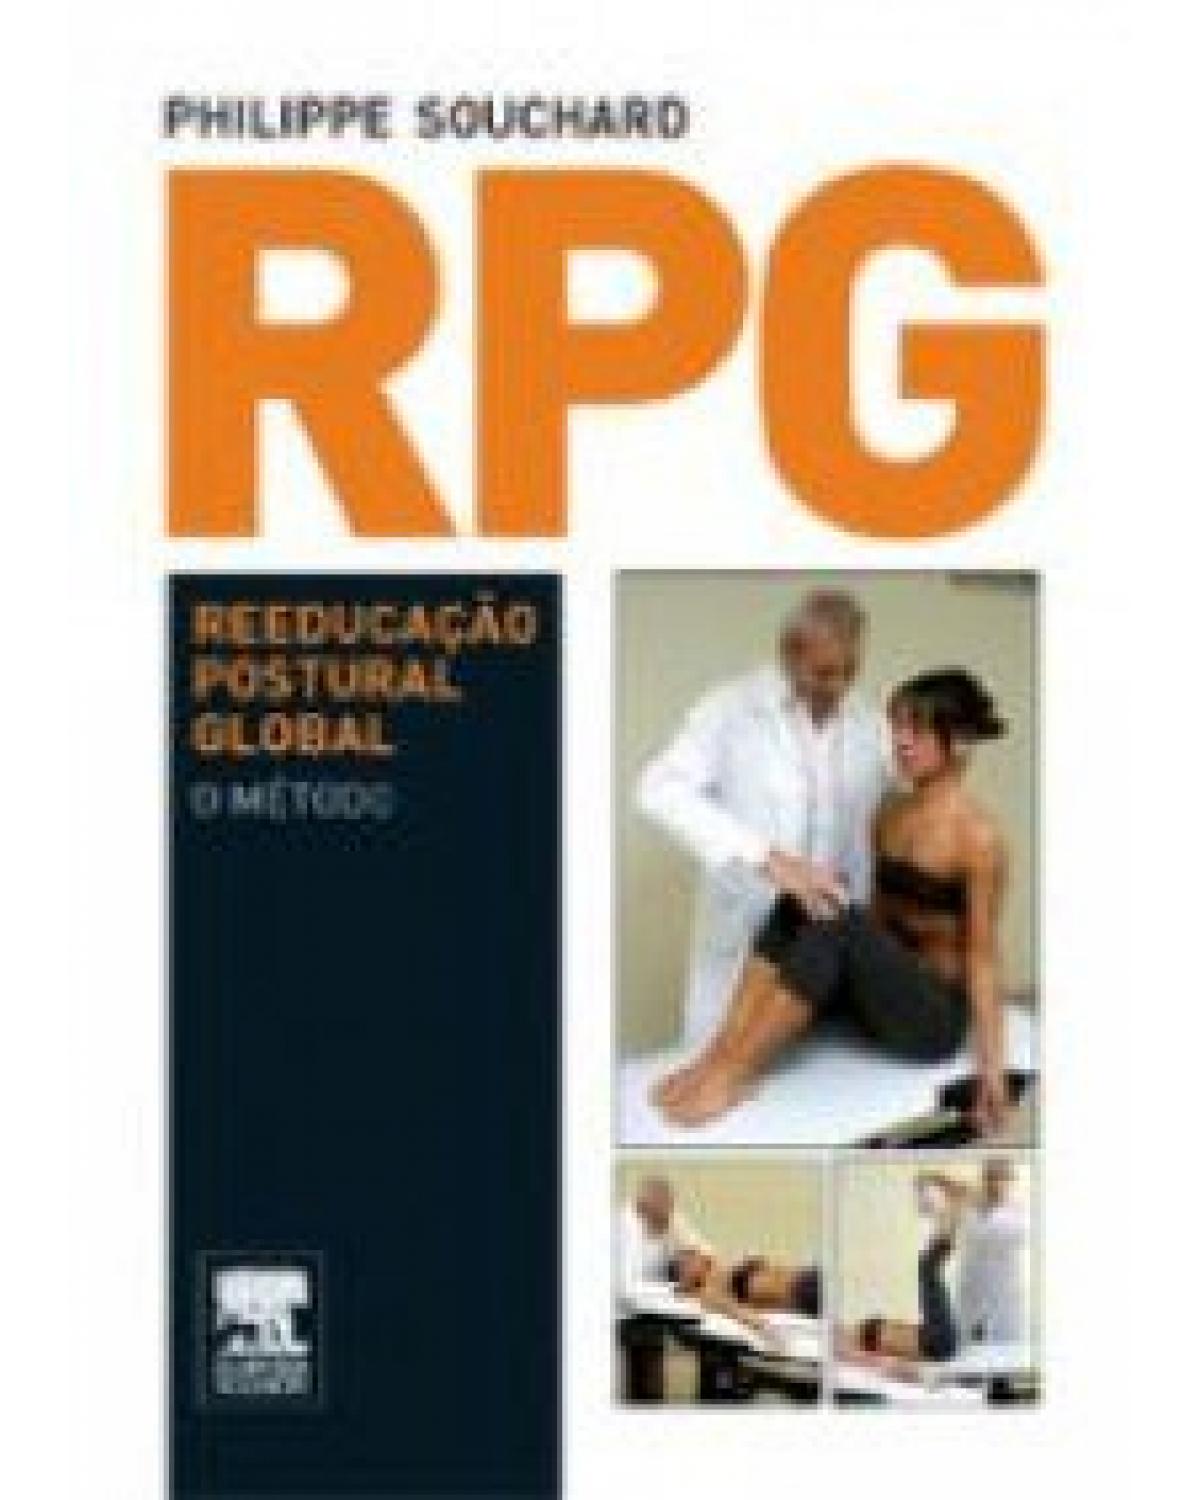 RPG - Reeducação postural global - 1ª Edição | 2012